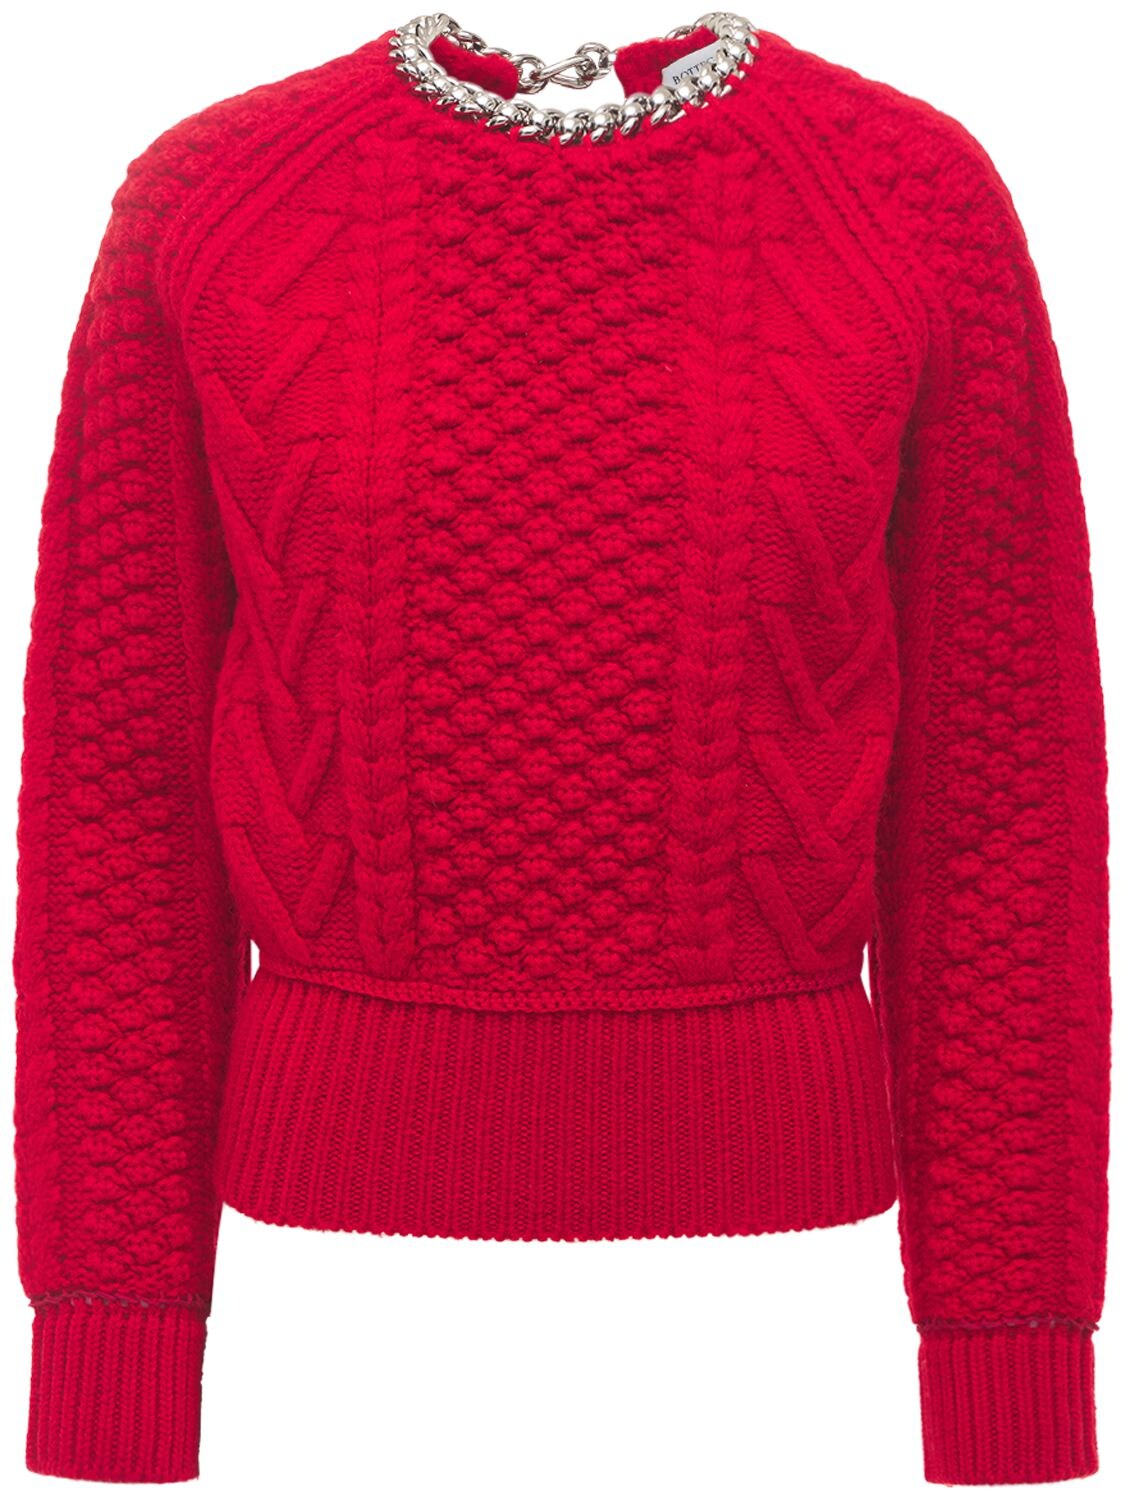 Shetland Tweed Sweater W/ Open Back